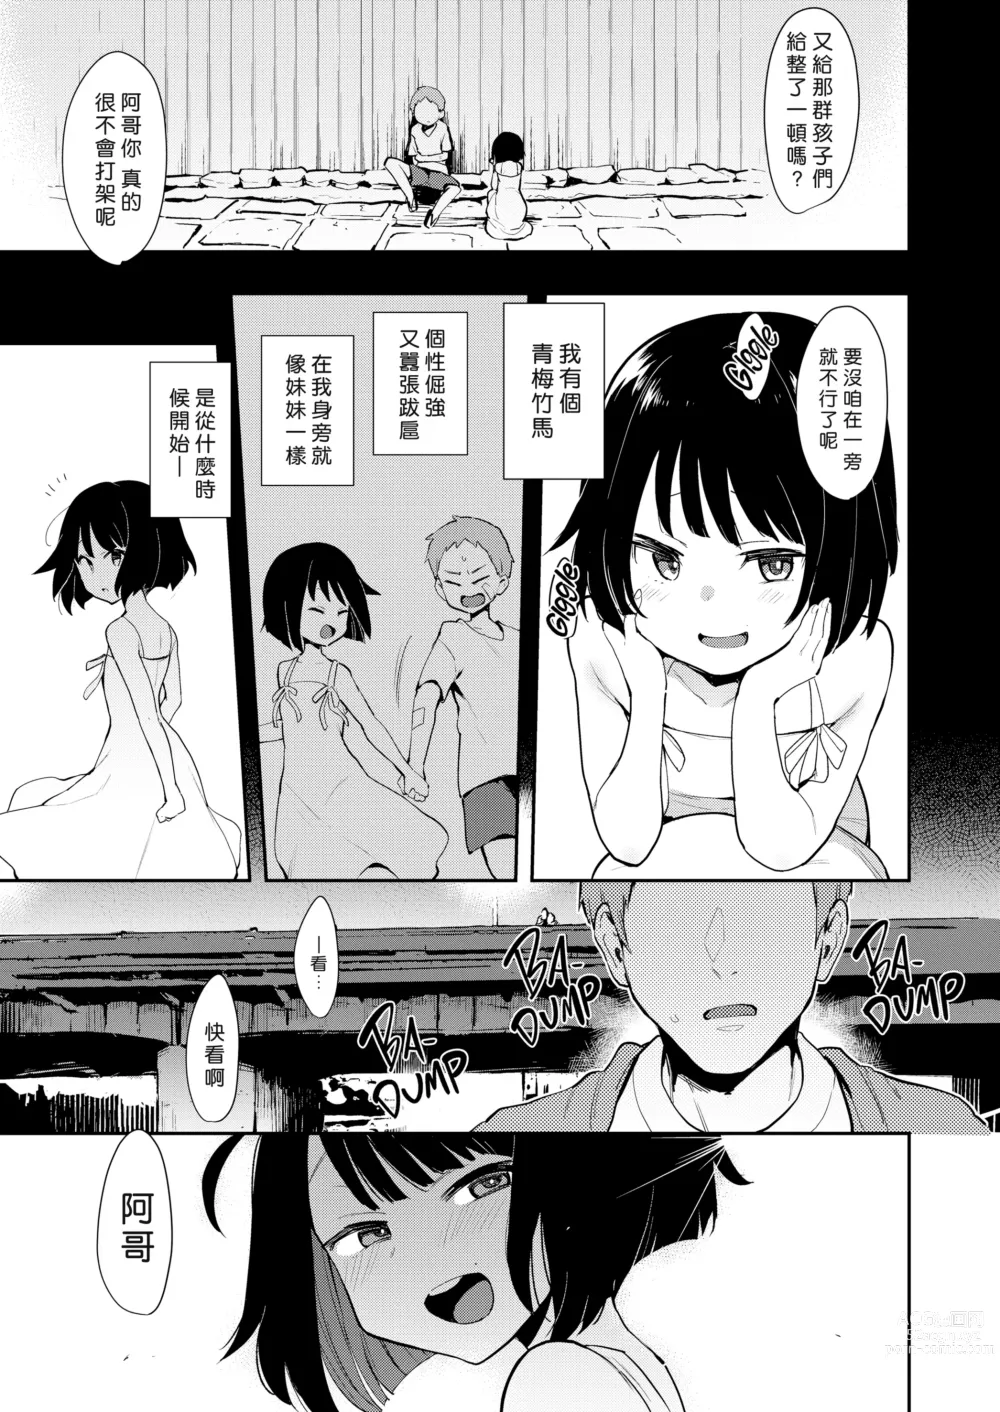 Page 3 of doujinshi Chouko I~V